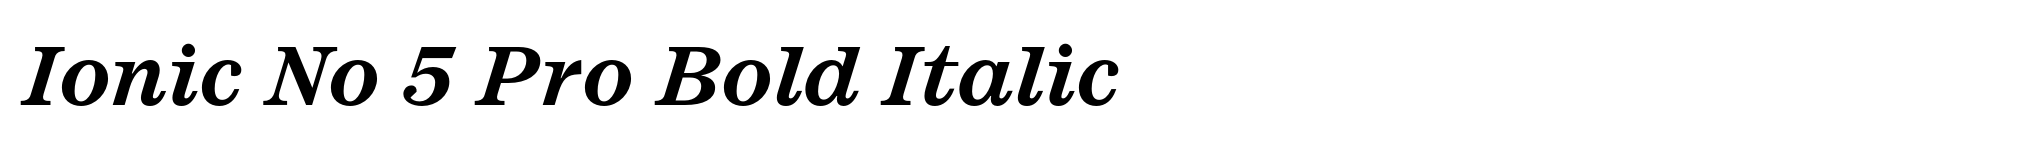 Ionic No 5 Pro Bold Italic image